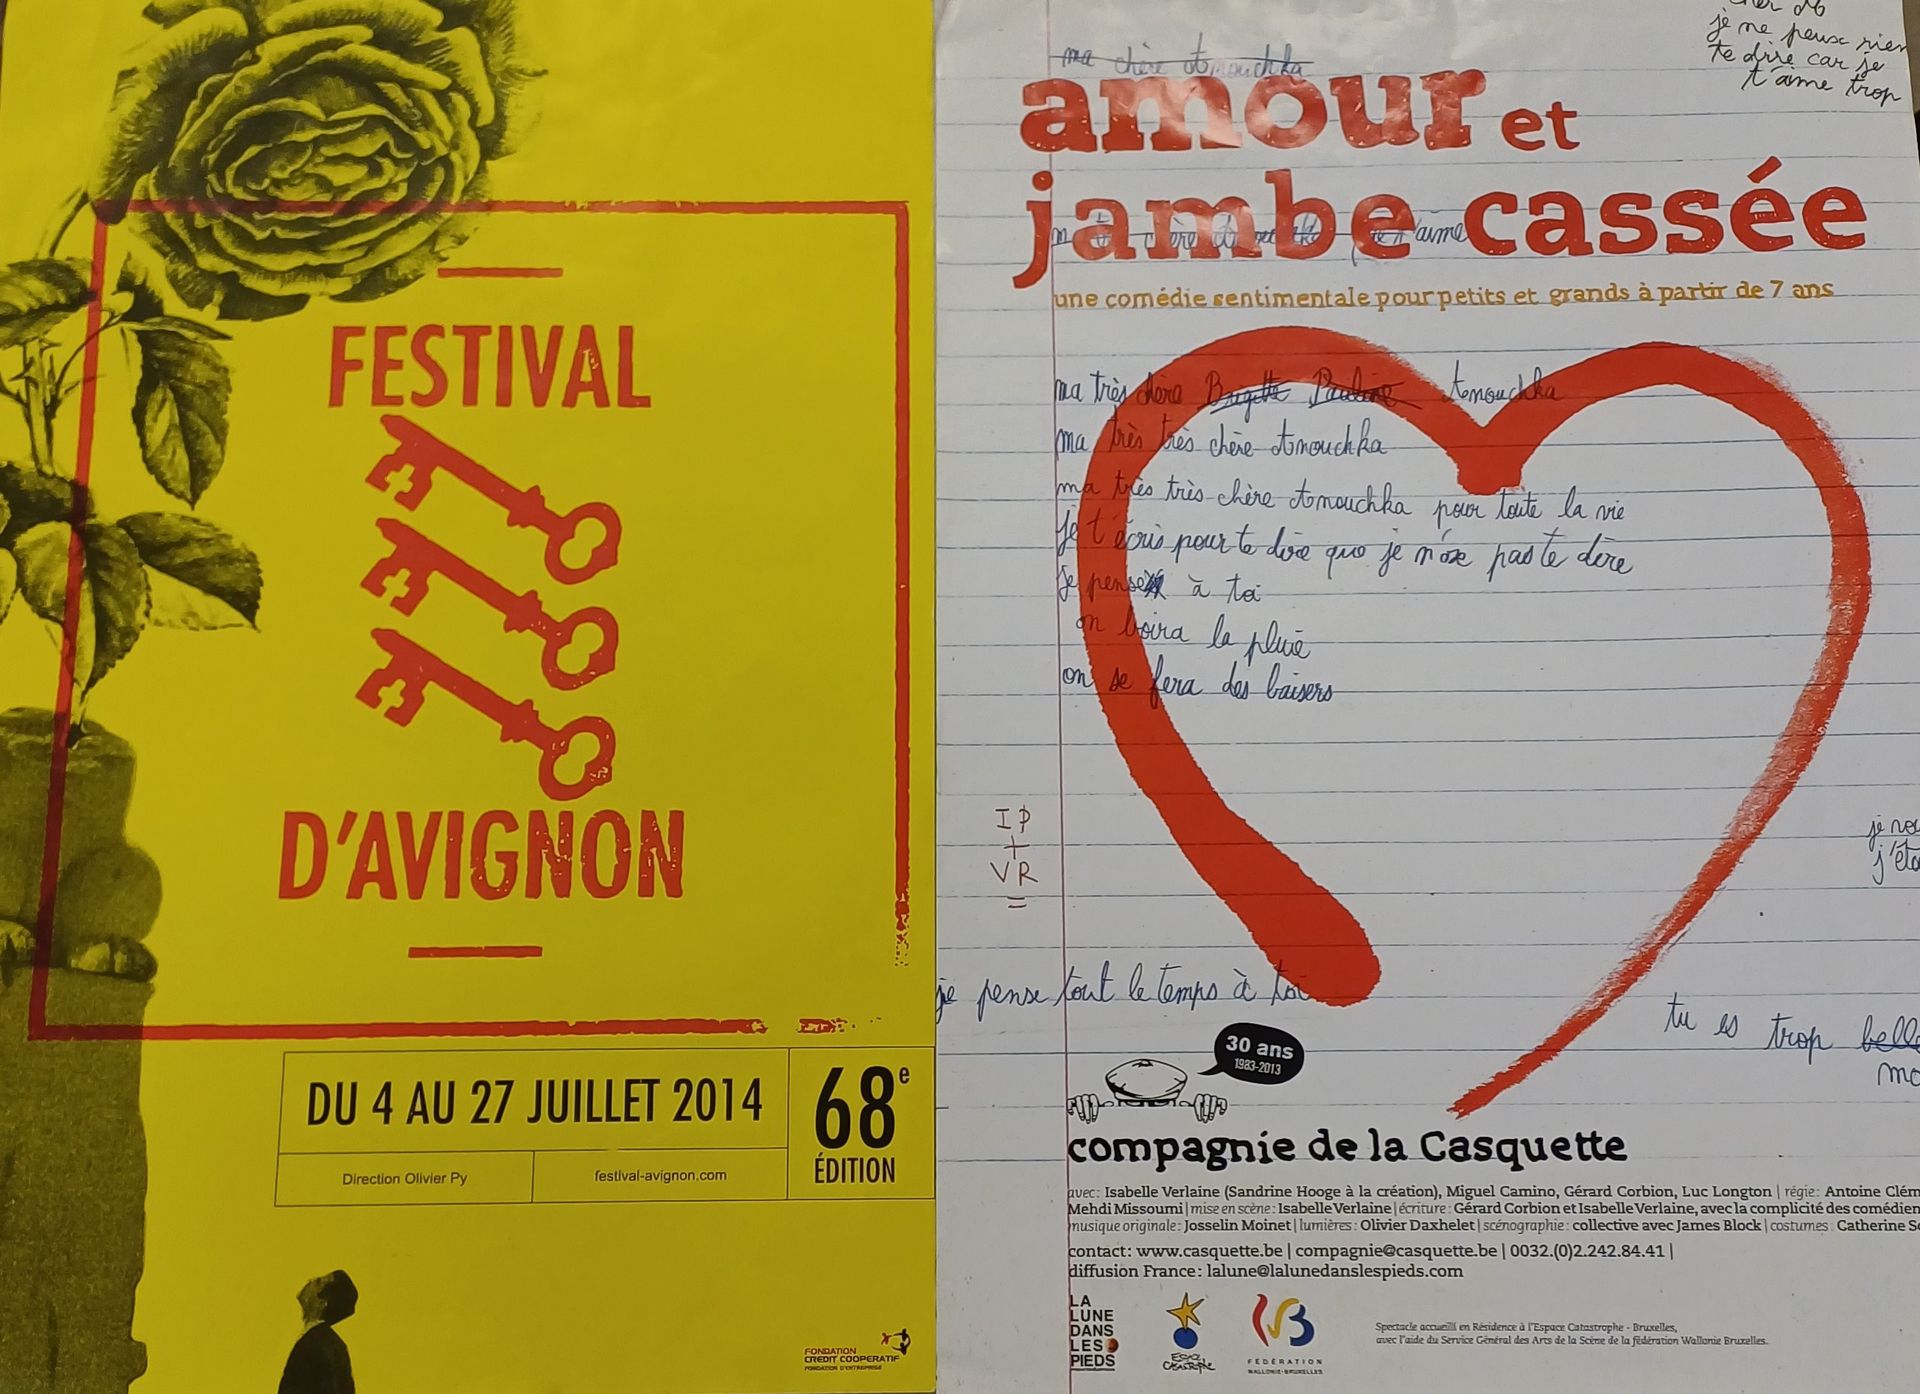 Null Lot de 2 affiches Festival d'Avignon, 2013 et 2014
60 x 42 cm